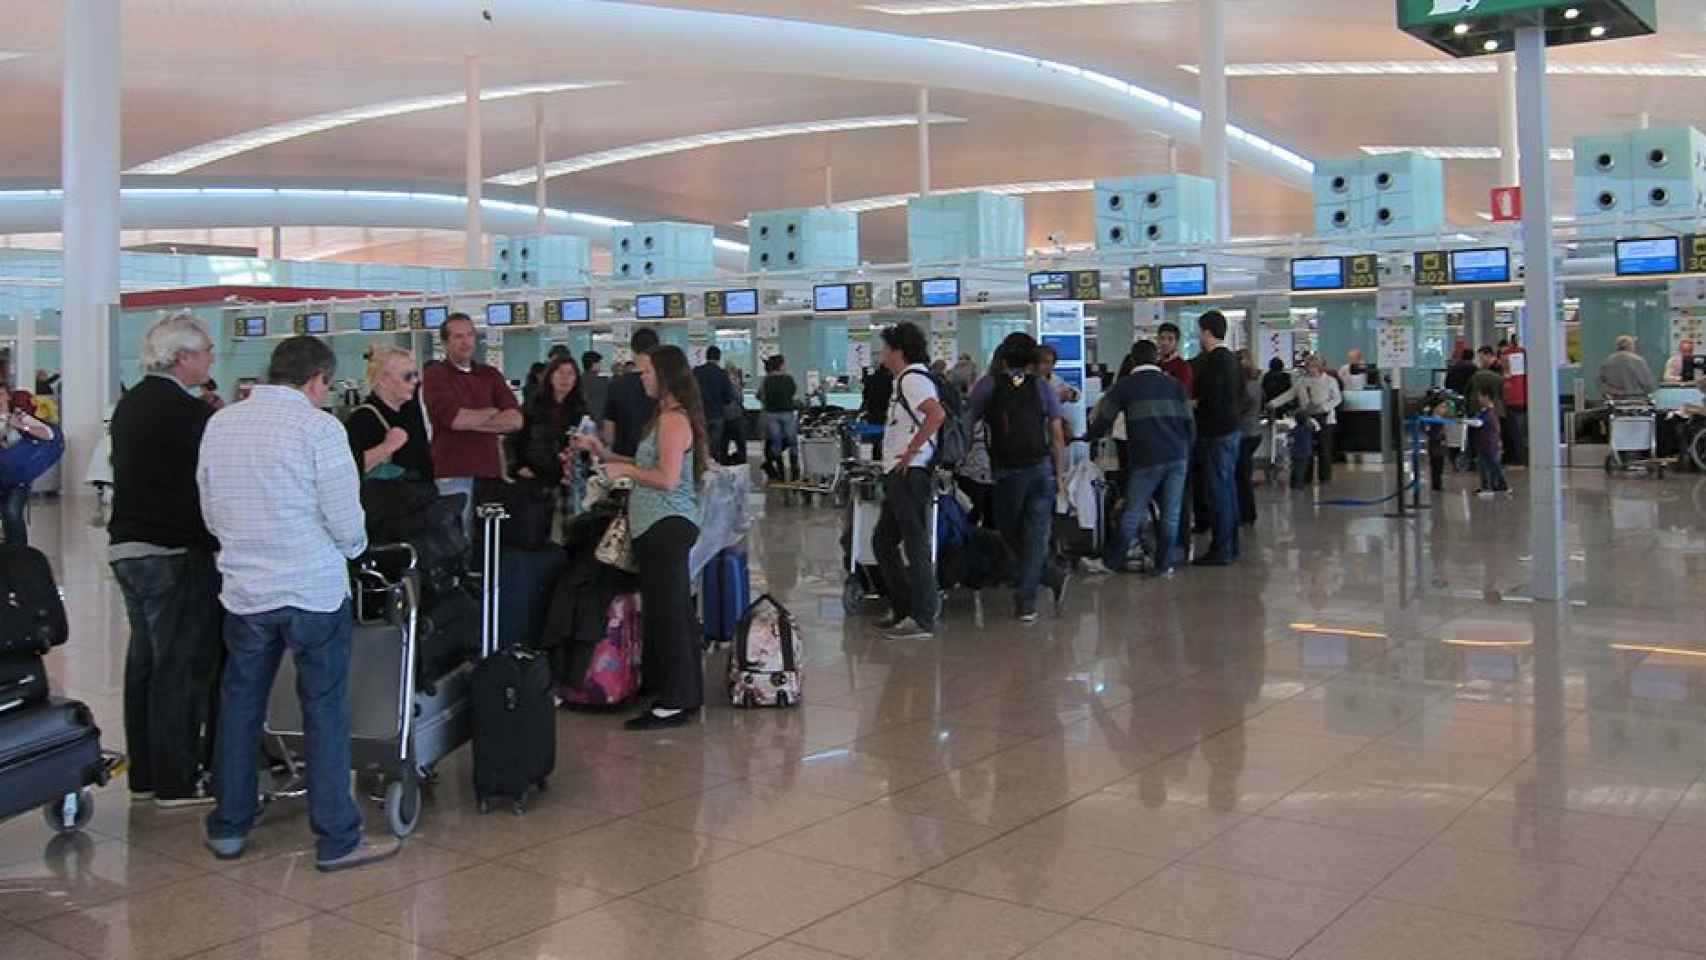 Cola de pasajeros en el aeropuerto de El Prat, que encajará una huelga indefinida de vigilantes a partir del viernes / EP